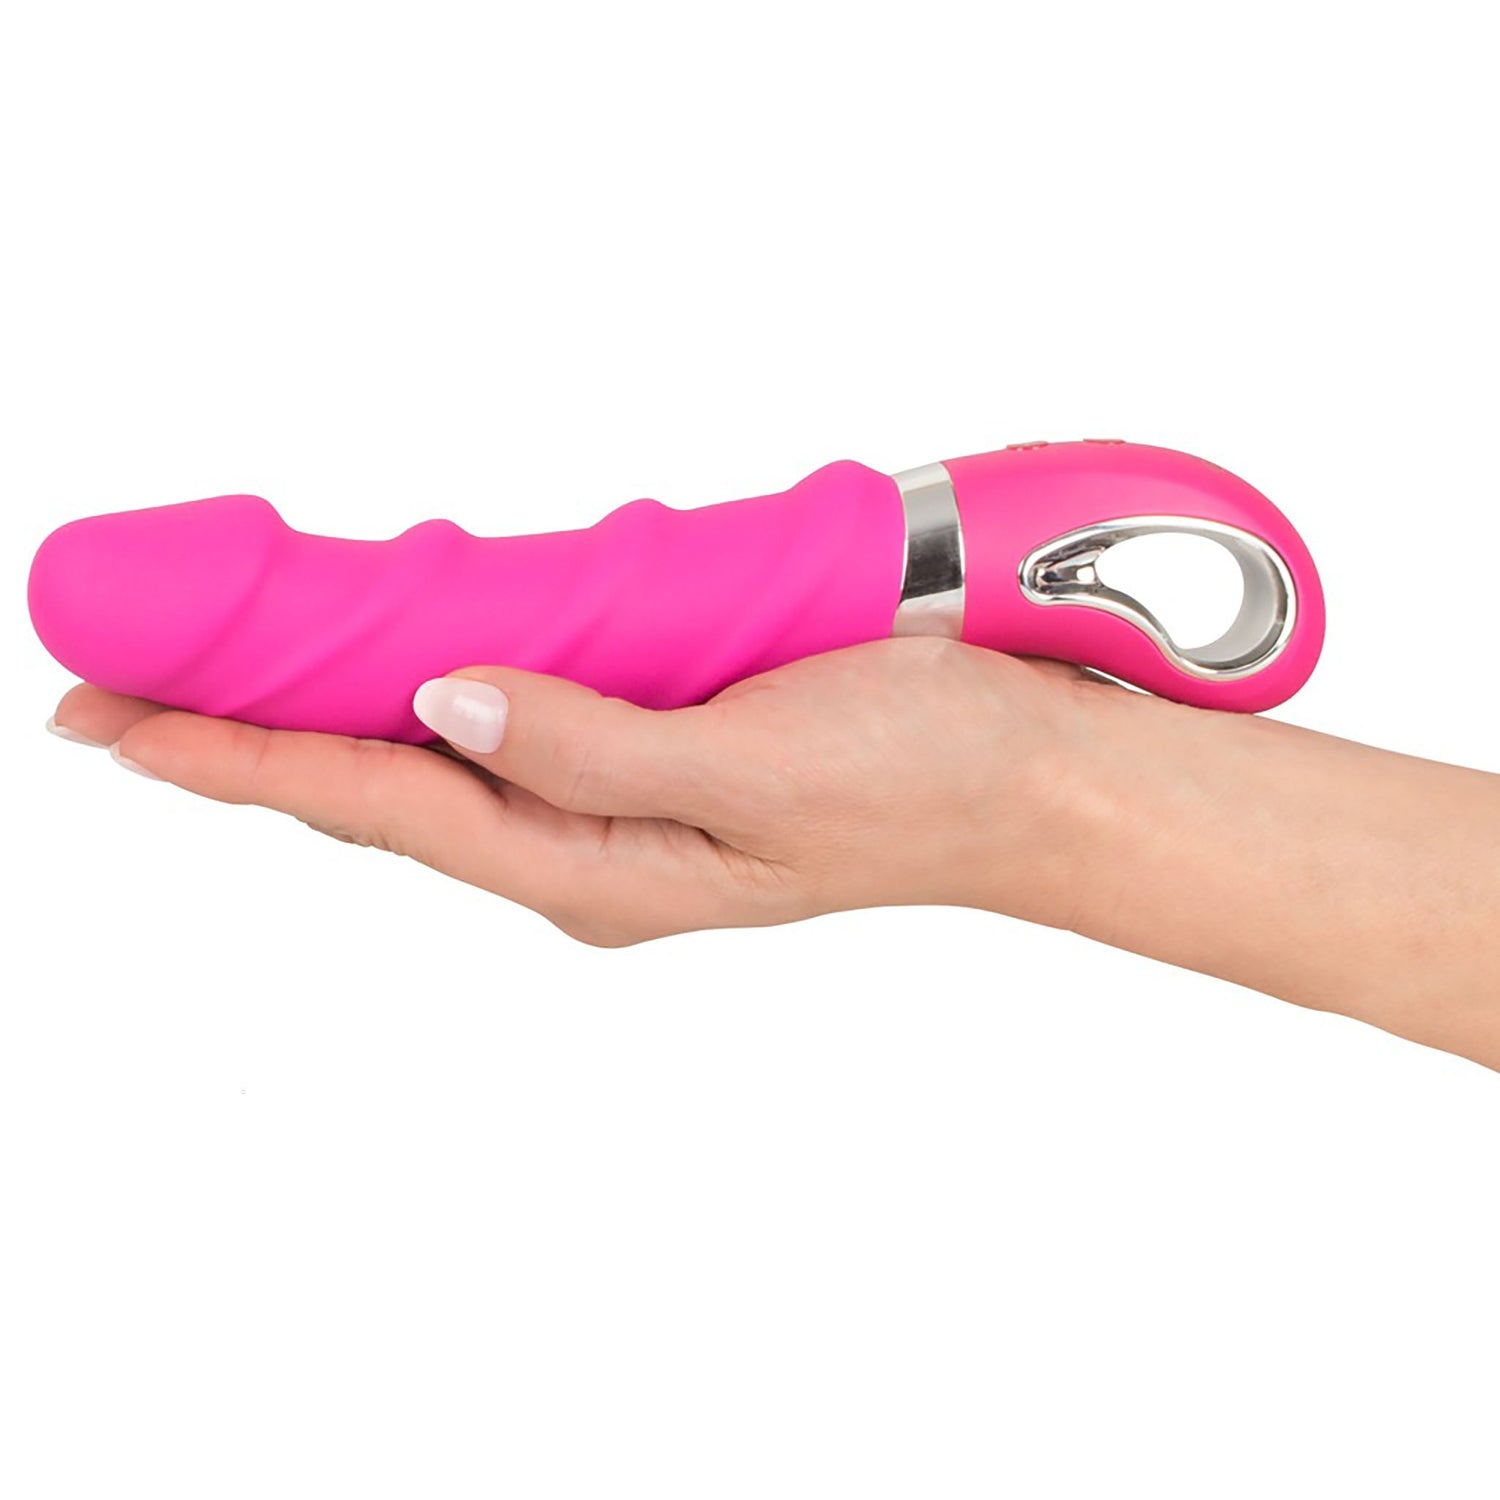 Wärmender Soft Vibrator in Pink in einer Hand gehalten